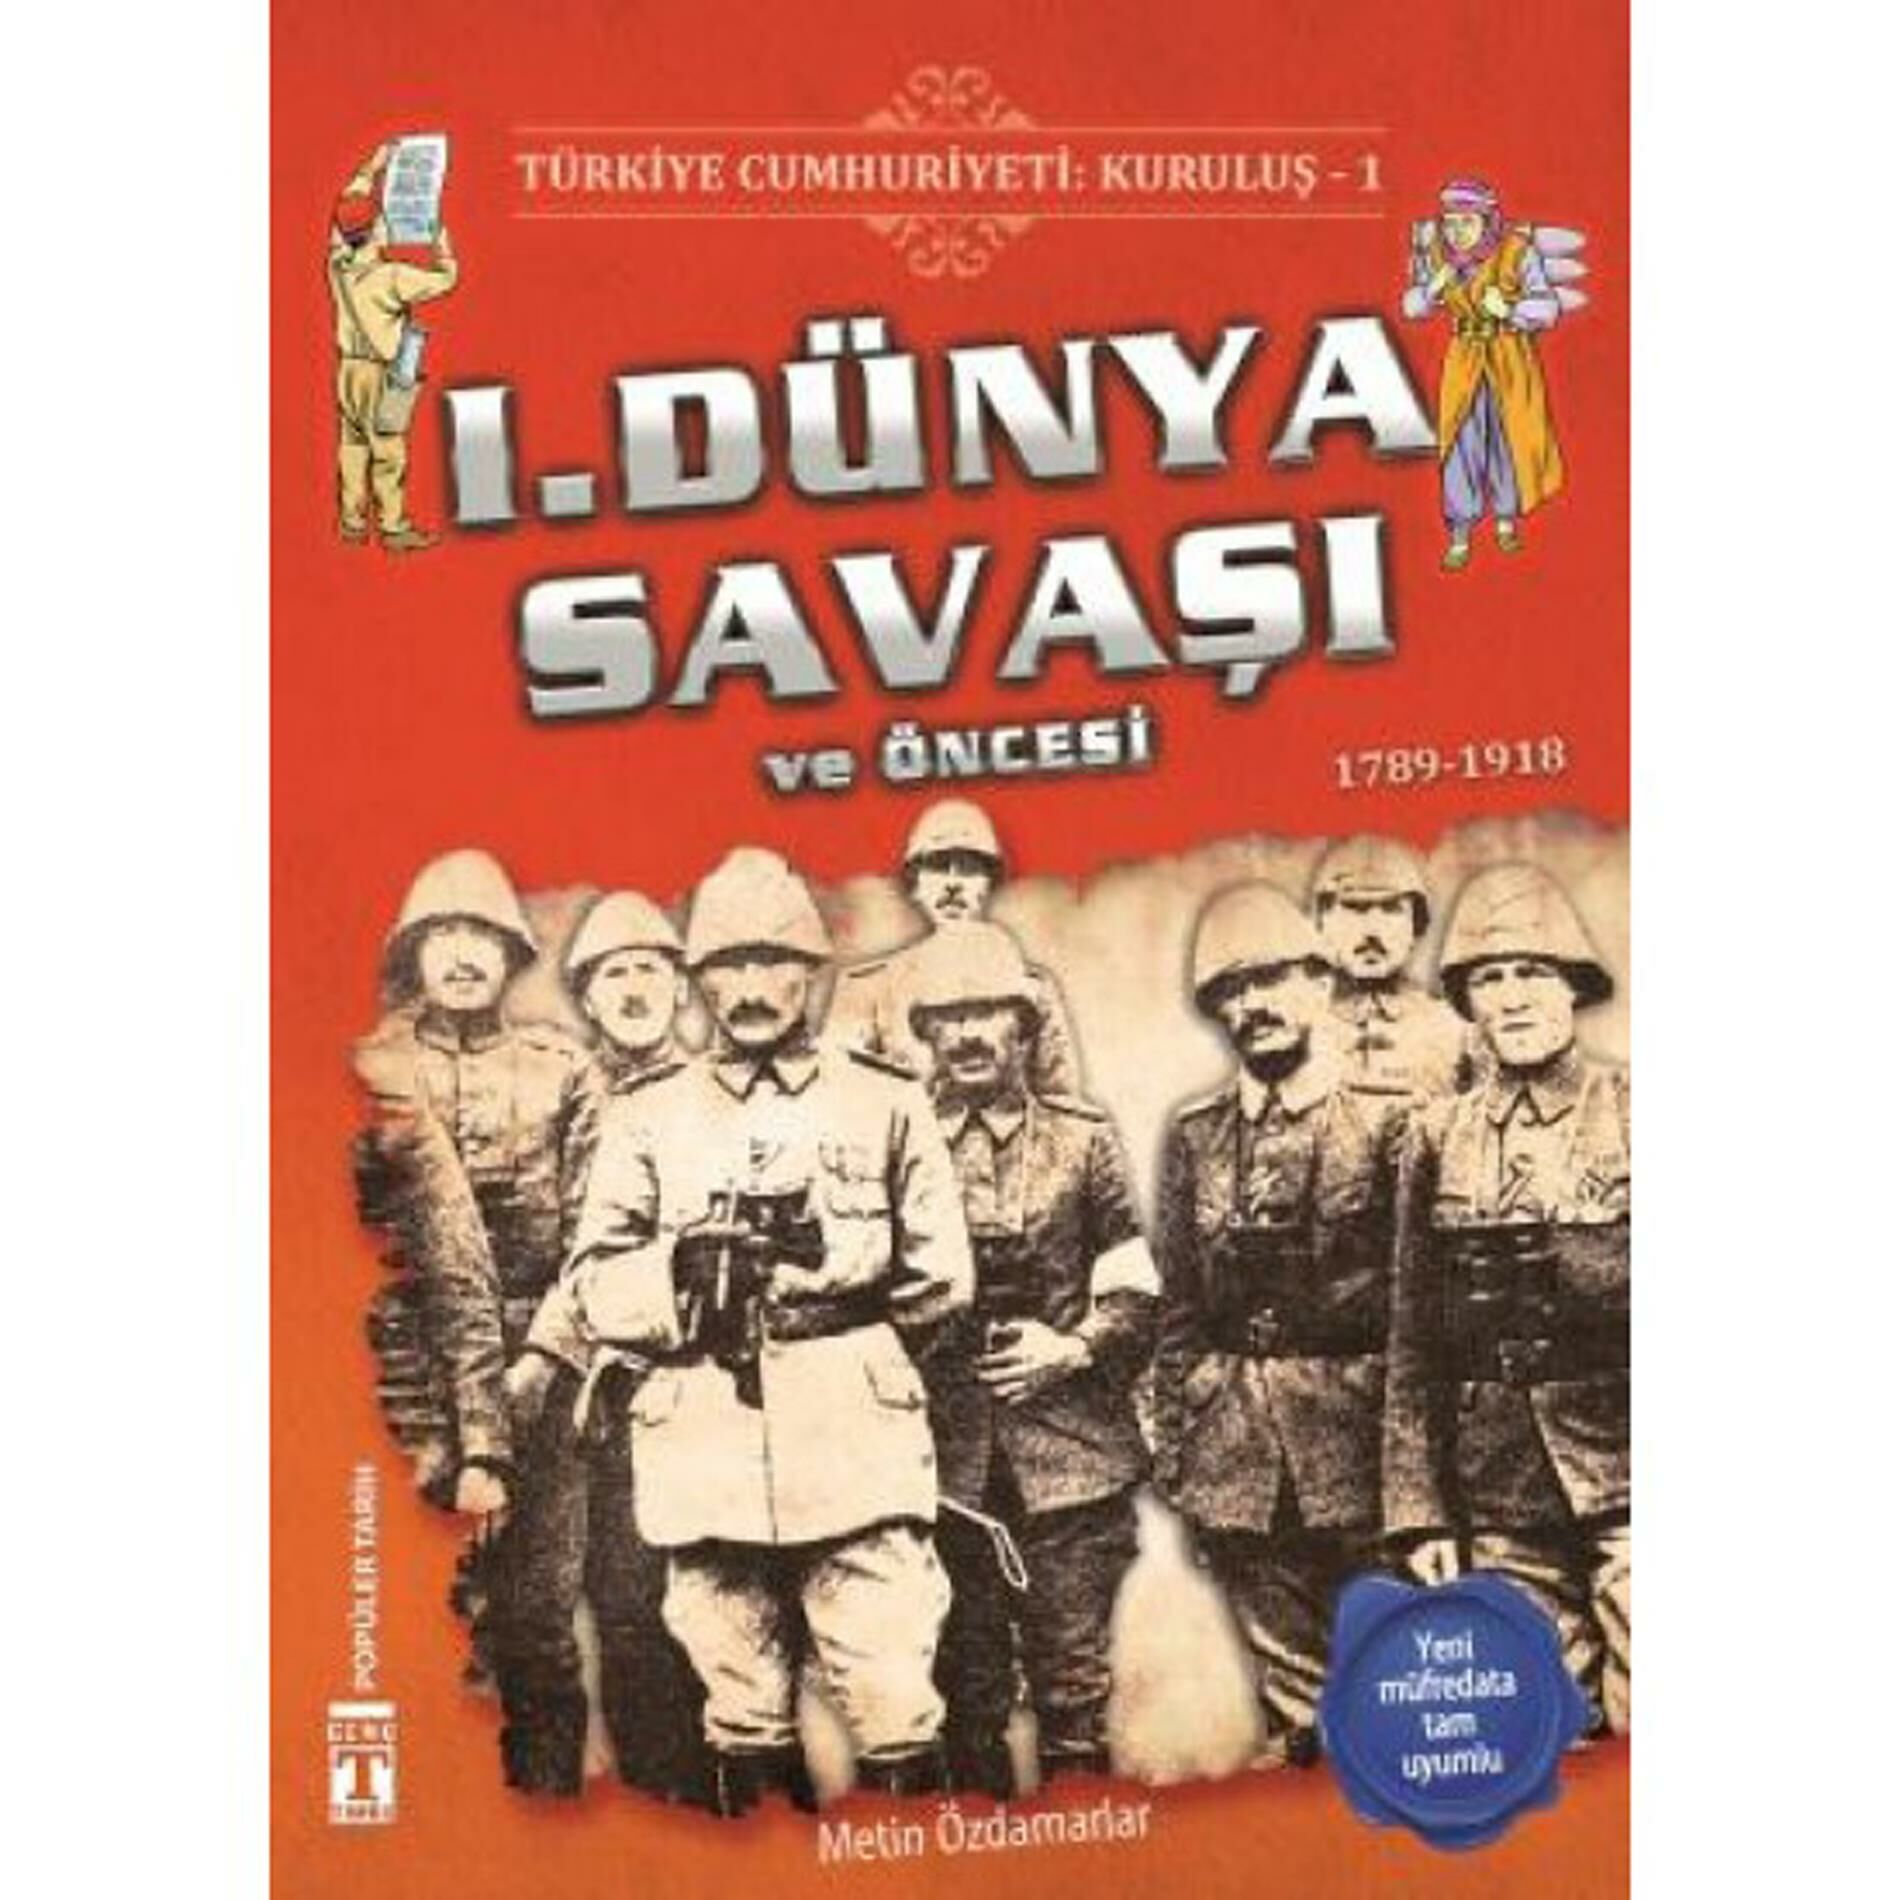 Türkiye Cumhuriyeti Kuruluş 1 1. Dünya Savaşı ve Öncesi